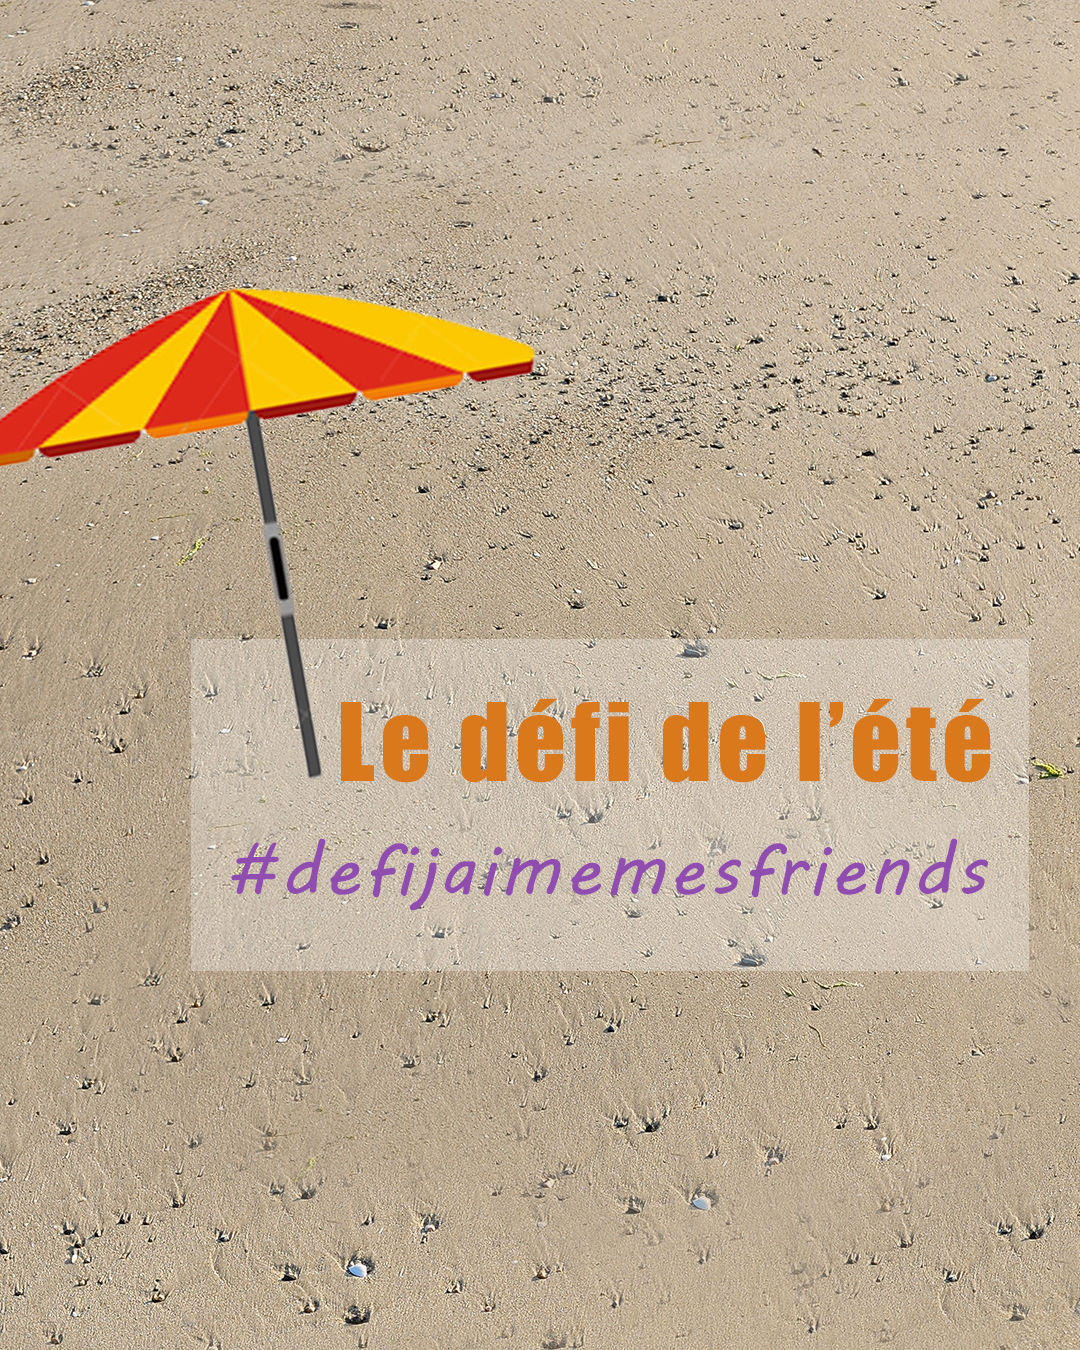 Le défi de l'été: participez au #defijaimemesfriends